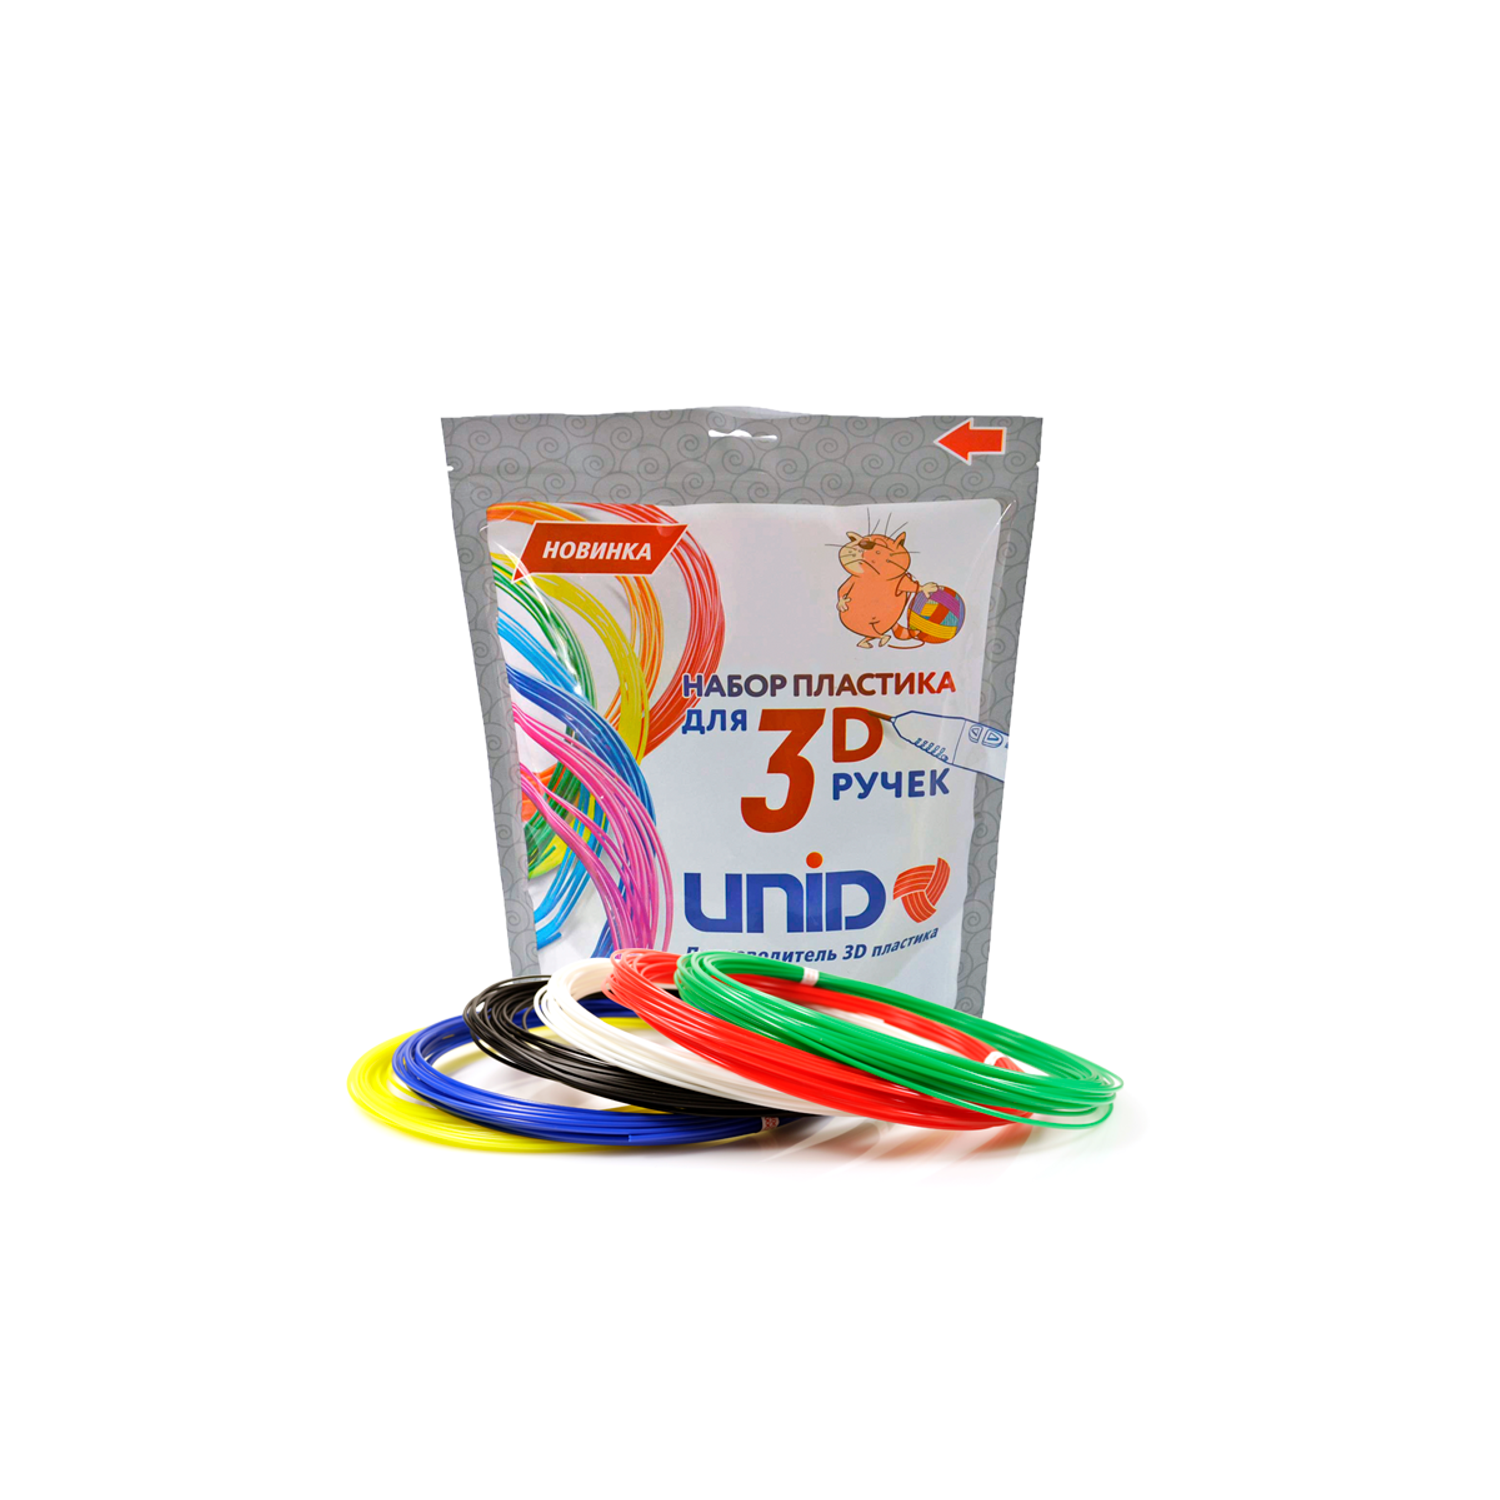 Пластик для 3д ручки UNID PLA6 - фото 1